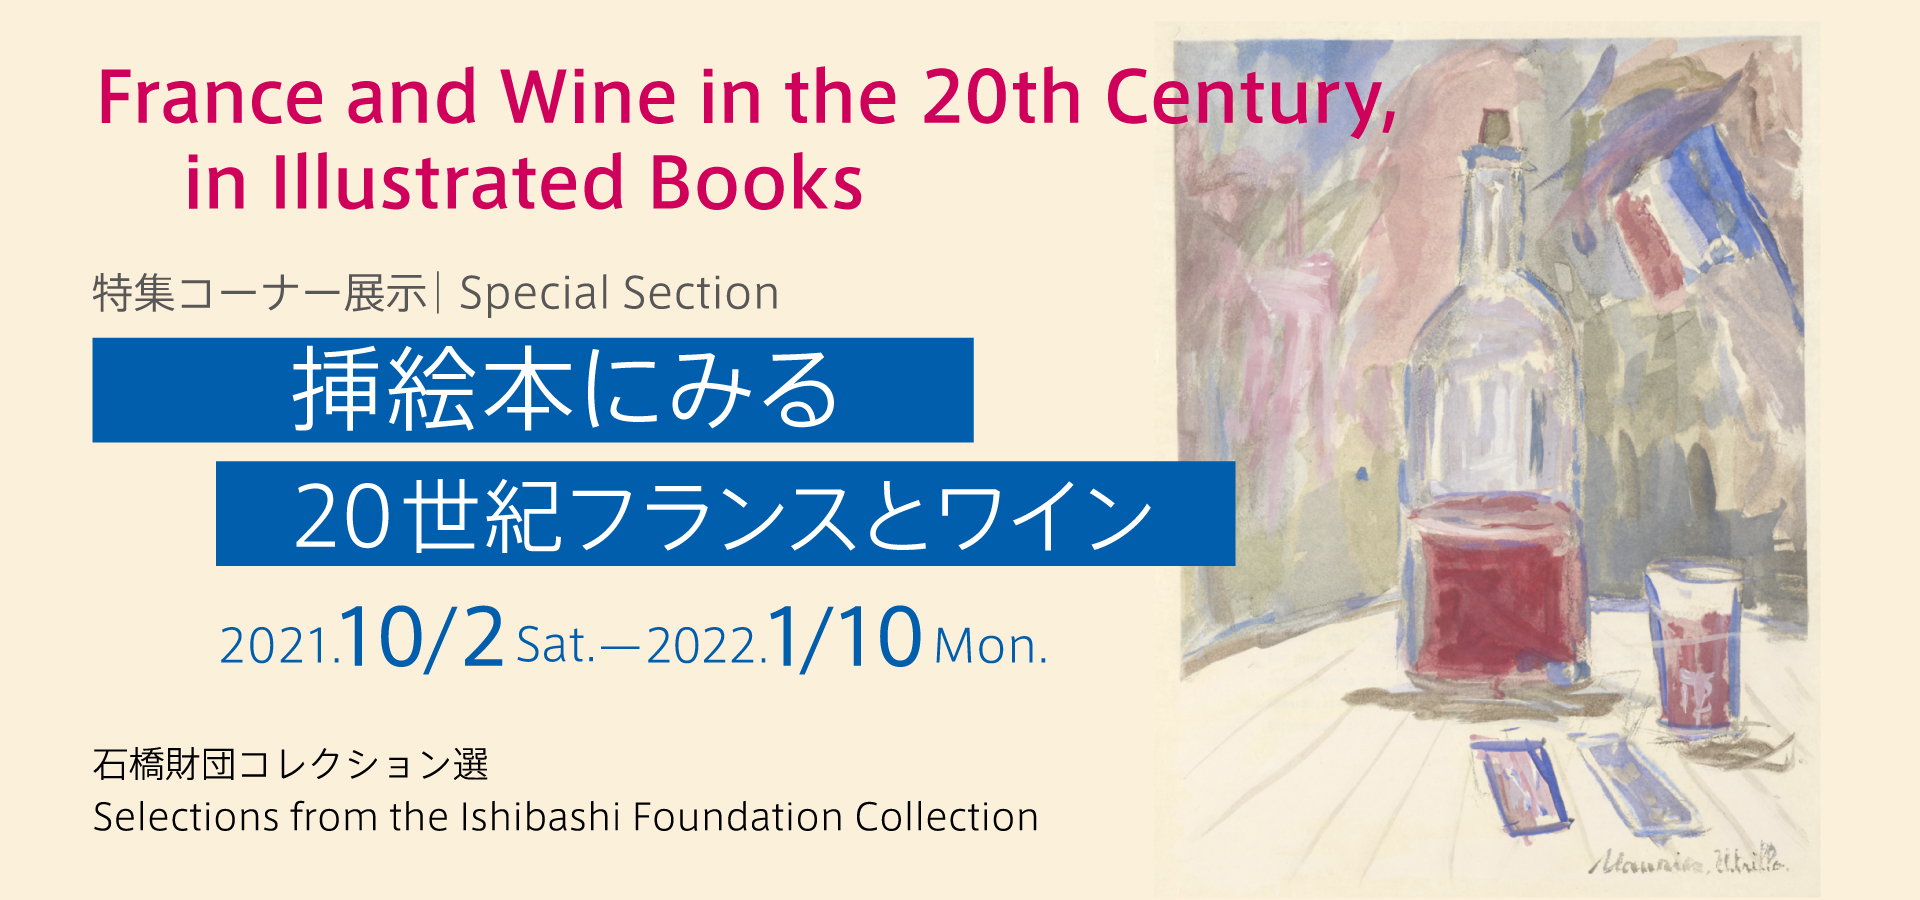 石橋財団コレクション選「特集コーナー展示 挿絵本にみる20世紀フランスとワイン」